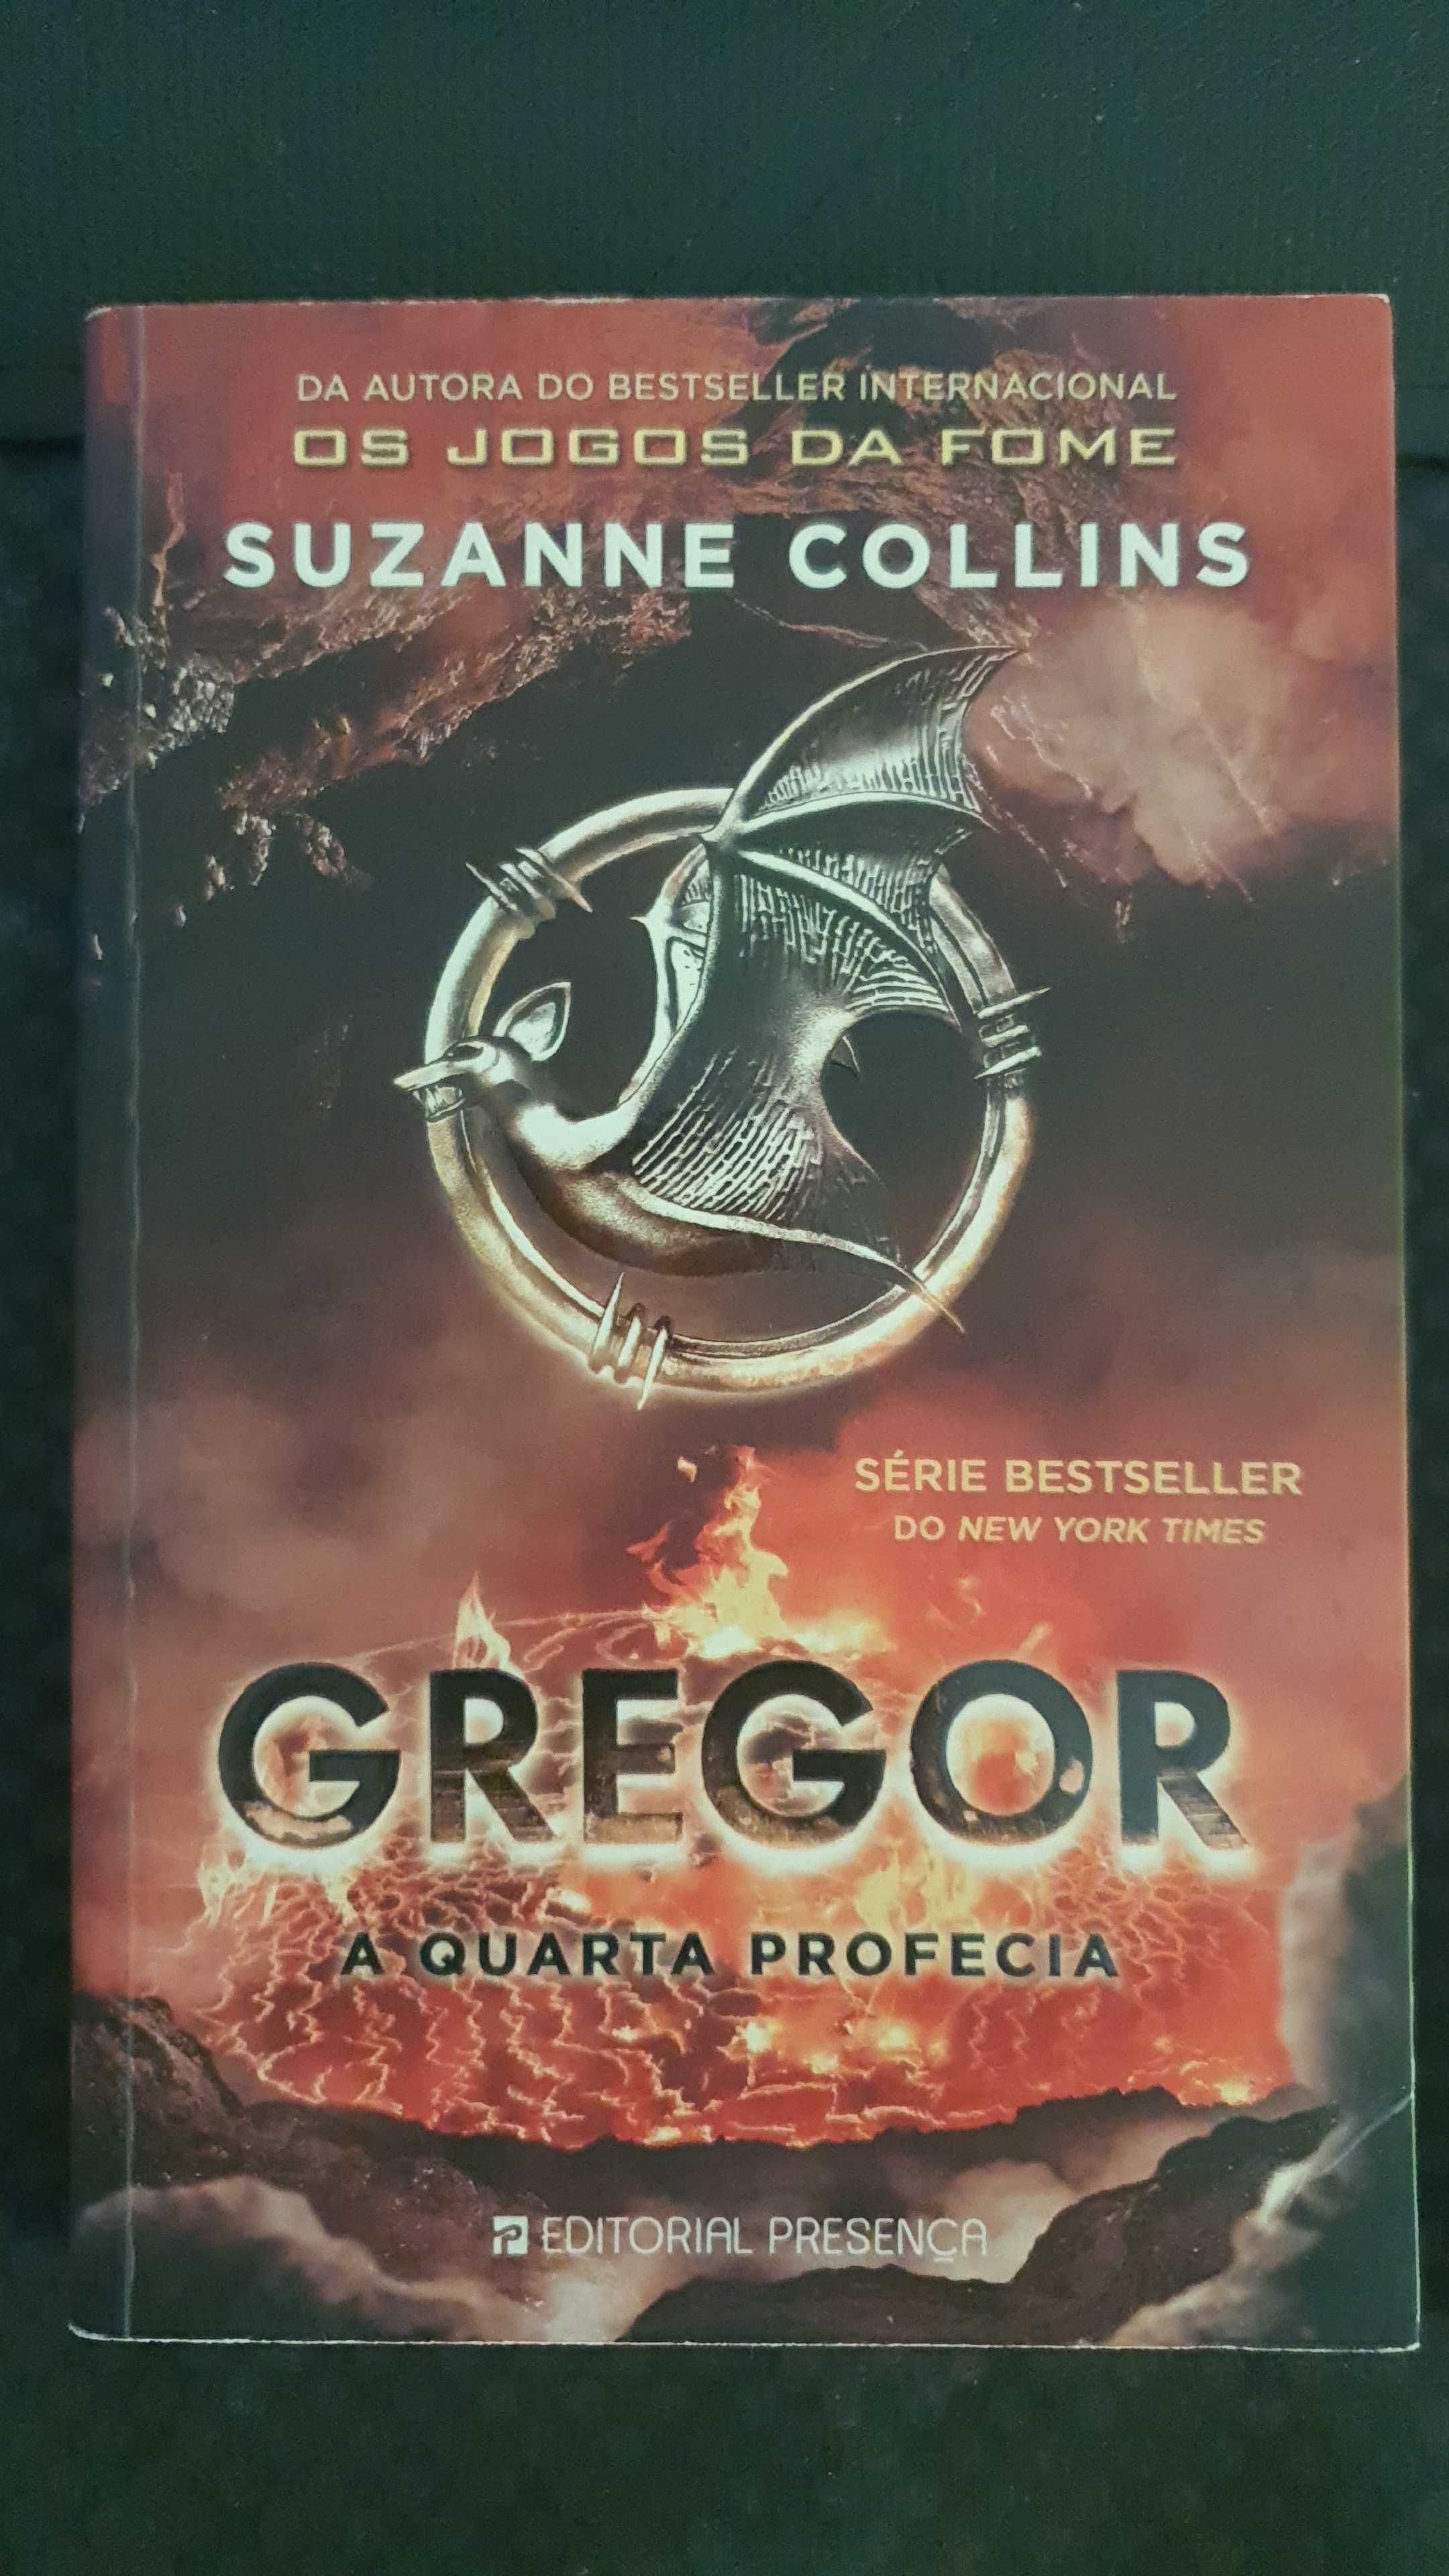 Livro Gregor a Quarta Profecia